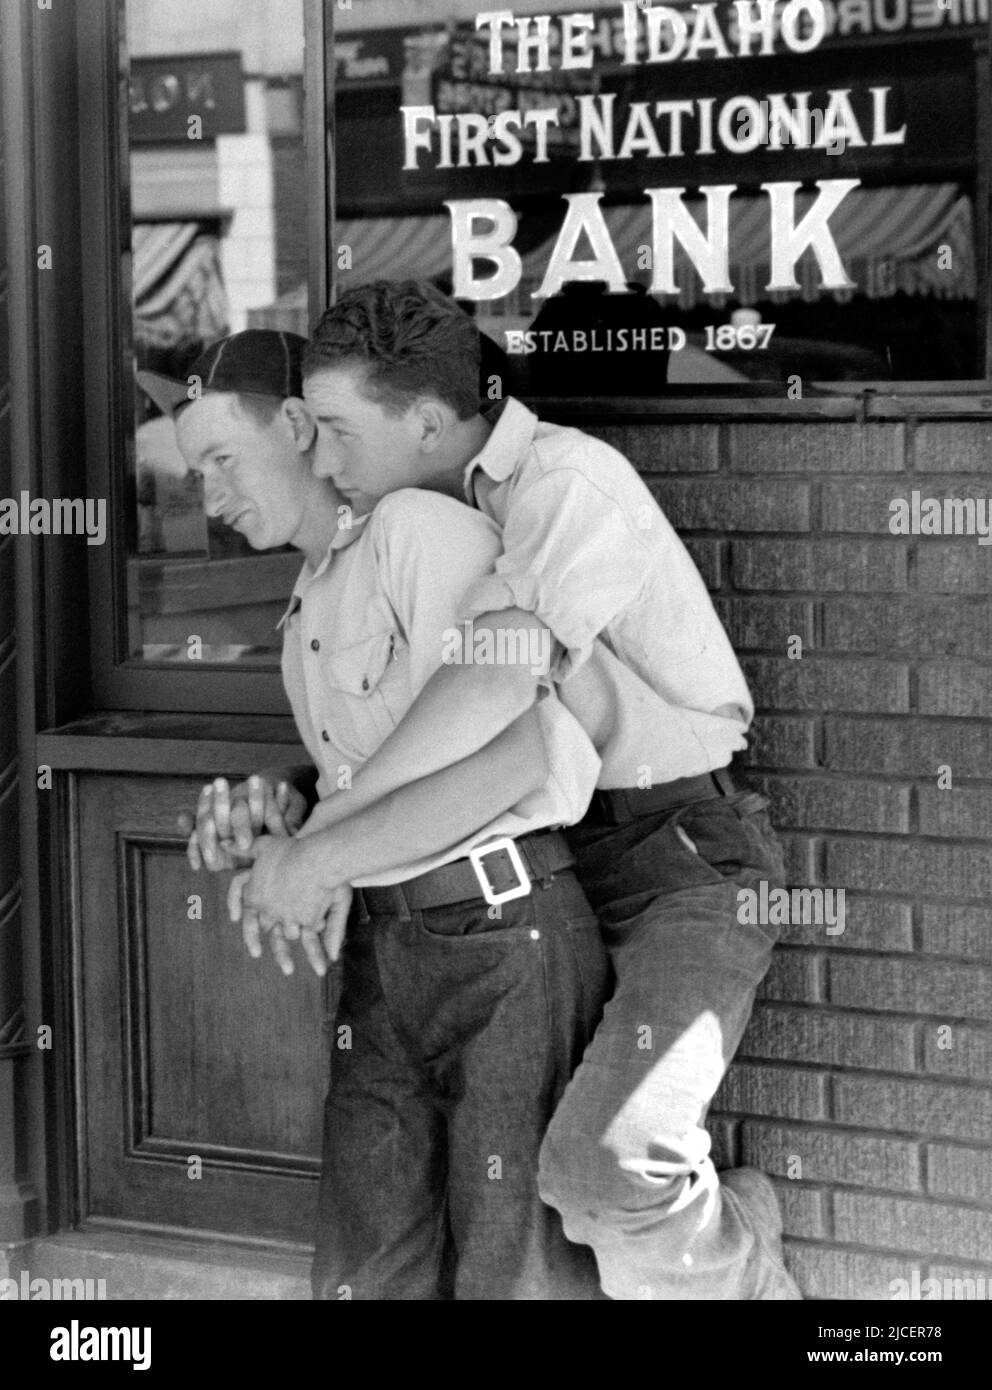 1941 , June , CALDWELL , IDAHO , Etats-Unis : deux GARÇONS FLIRTING , dans le bleu jeans pantalon , embrassé comme des amis très proches posant et souriant , se pencher à l'entrée d'un bureau de banque de LA PREMIÈRE BANQUE NATIONALE DE L'IDAHO de LA BRANCHE DE CALDWELL . Photo de RUSSELL LEE ( 1903 - 1986 ), employé des unités photographiques nationales de la United States Agricoture Farm Security Administration ou de l'Office of War information, en tant que travail du gouvernement fédéral des États-Unis. - AMOUR - AMORE - STATI UNITI AMÉRIQUE - bellezza - beauté - LGBT - GAY - FIERTÉ - JEUNESSE - Gioventù - portrait - ritratto - omosessuale - homosexualité Banque D'Images